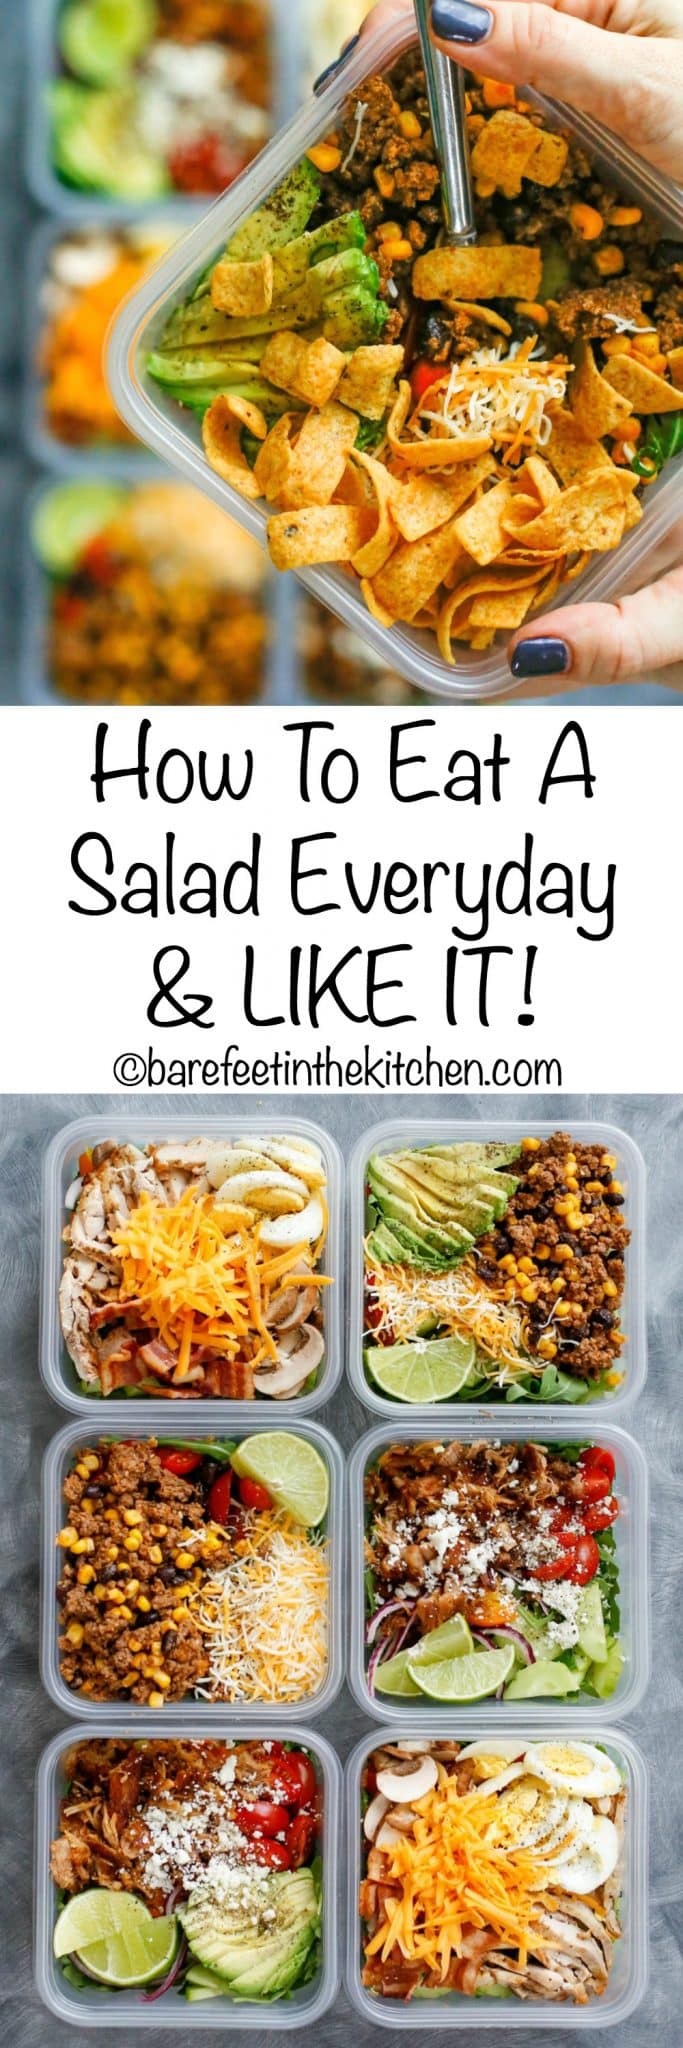 Tutti i consigli per la preparazione del pasto in insalata! 